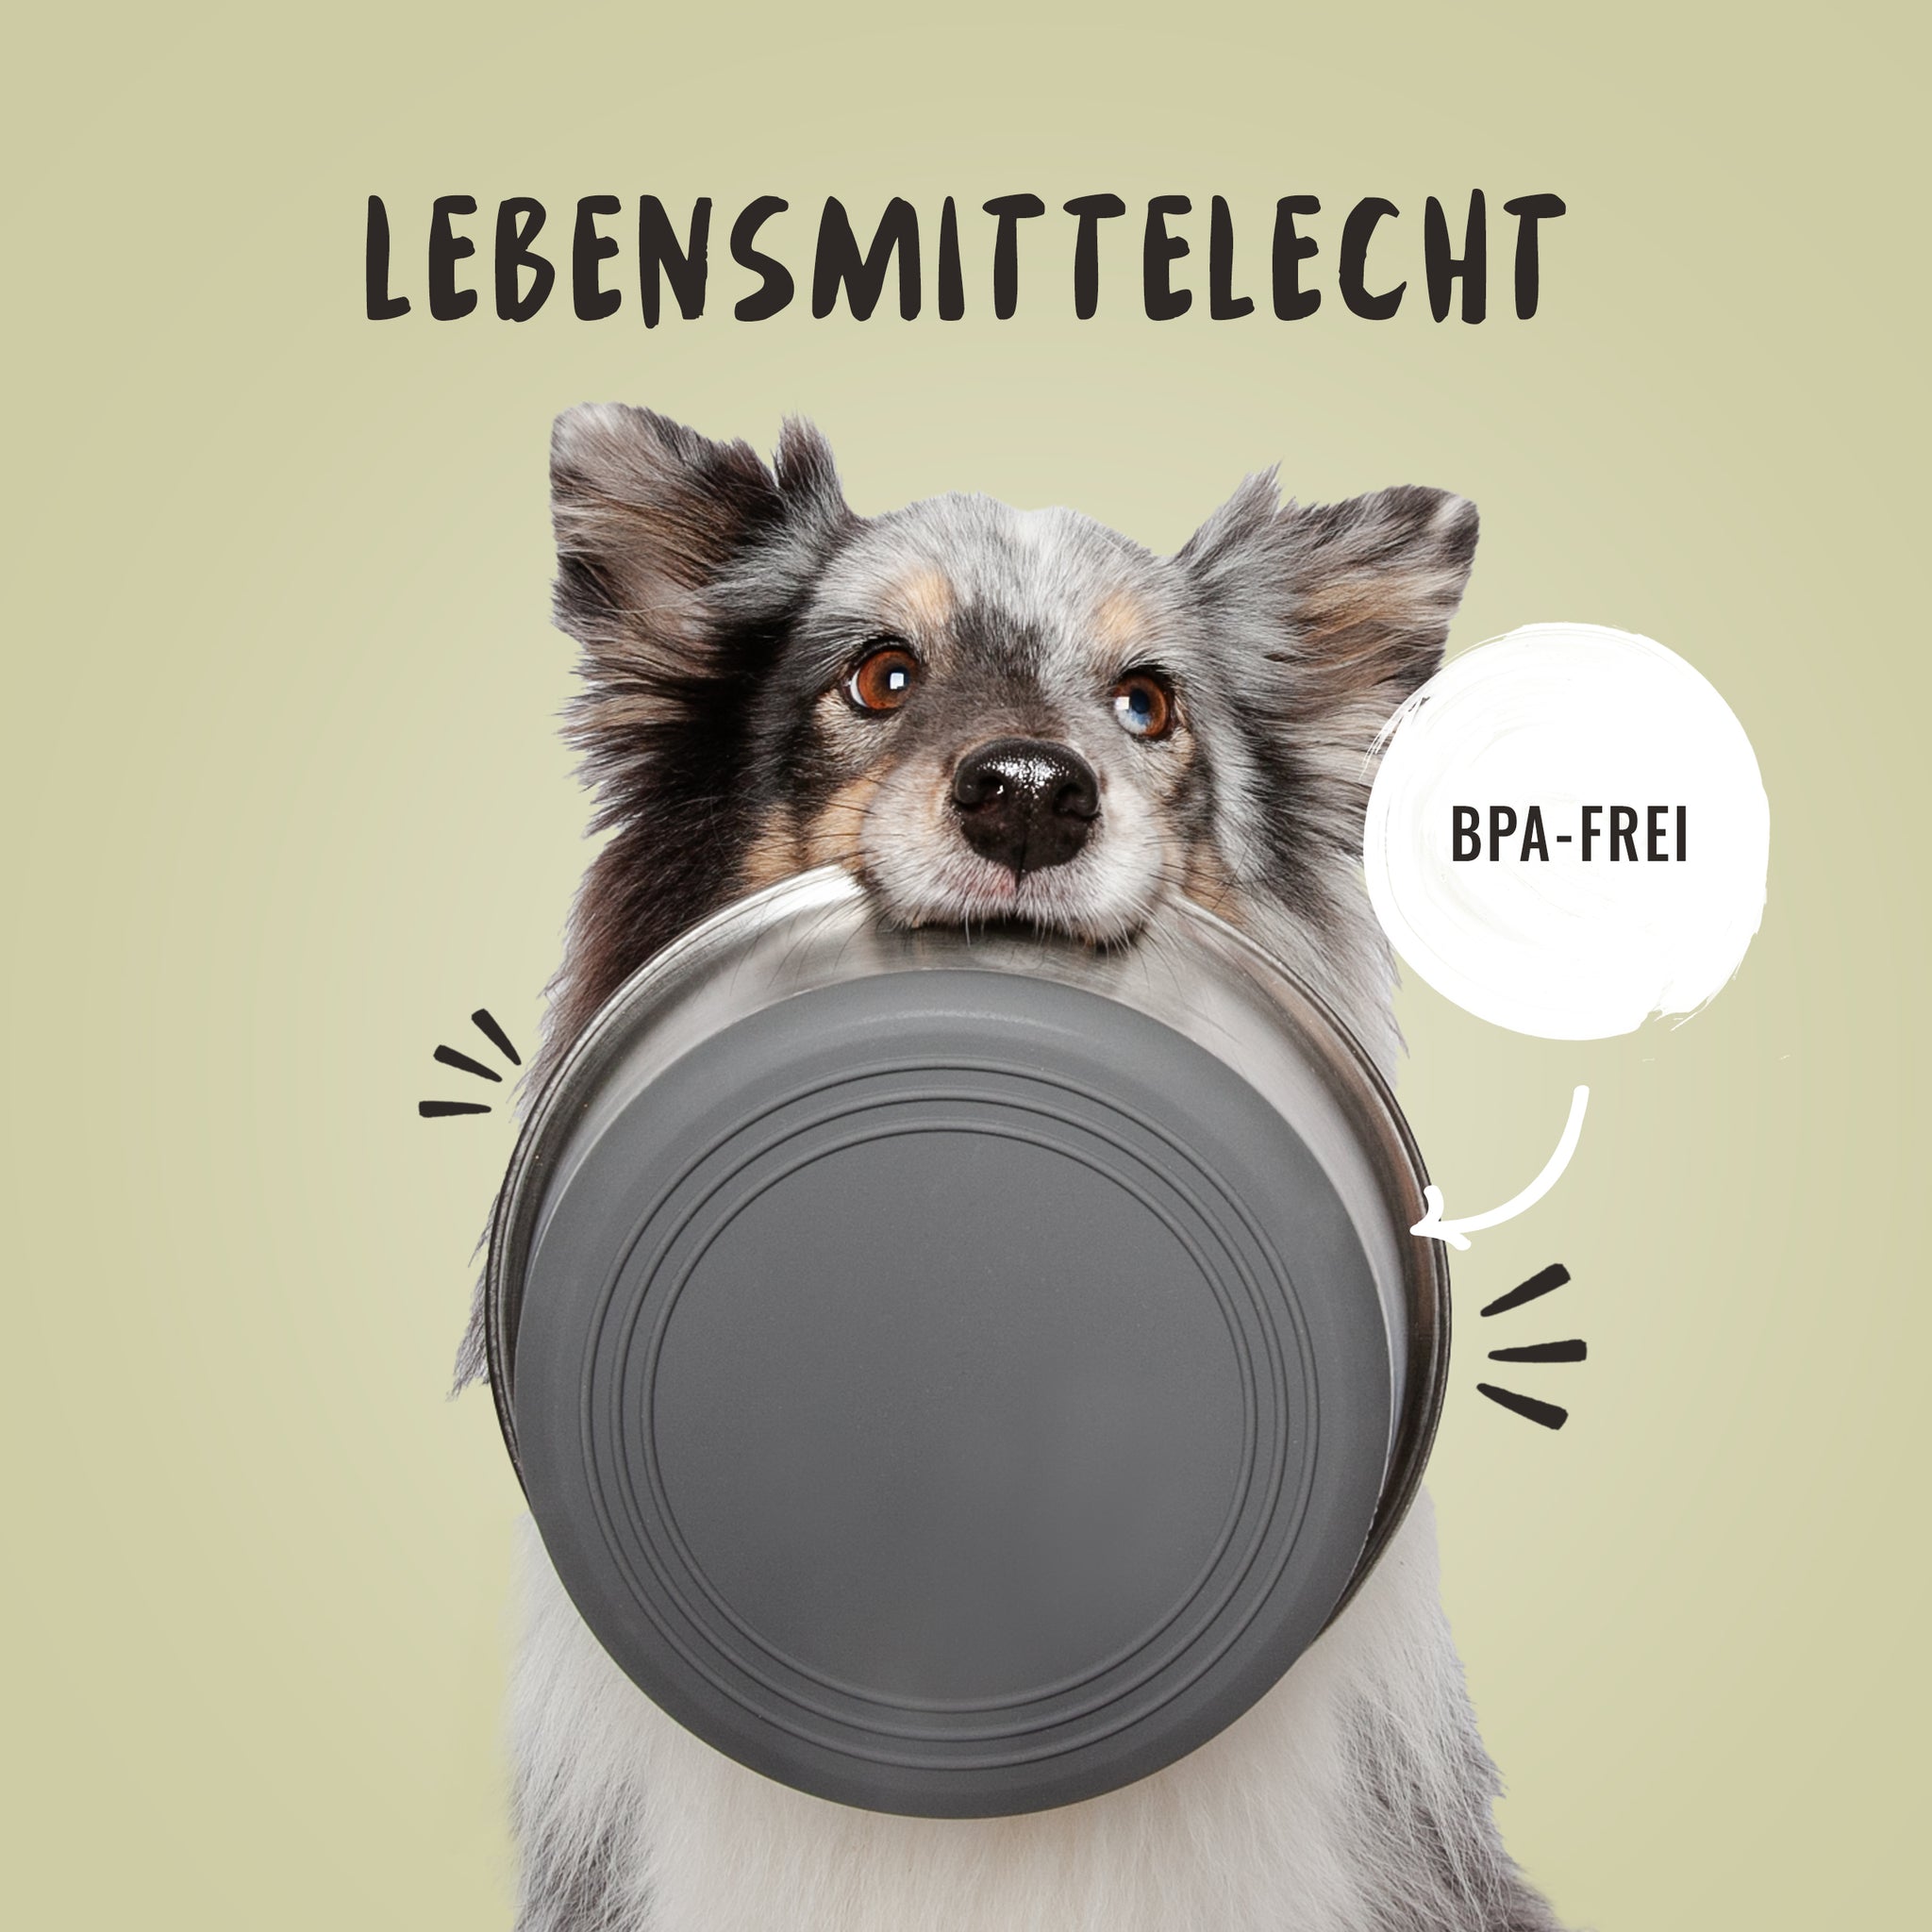 Der Edelstahlnapf ist BPA frei und lebensmittelecht als Hundenapf, darüber freut sich der Sheltie im Bild.